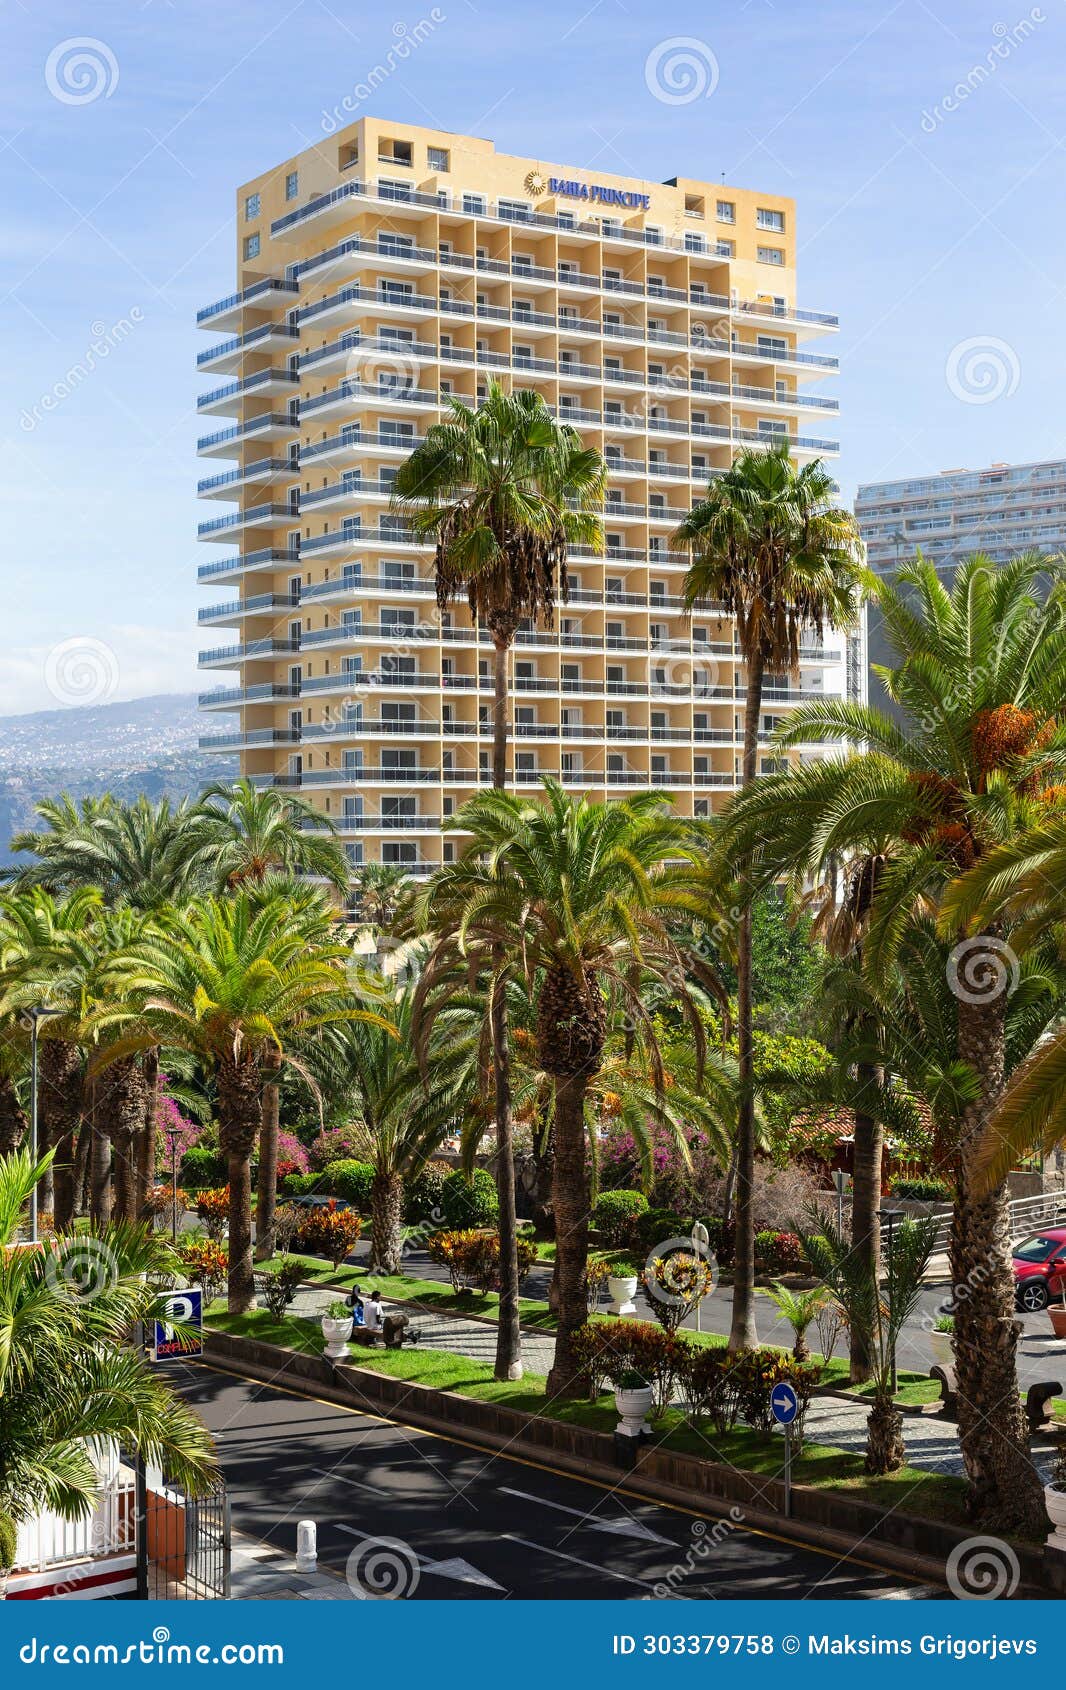 puerto de la cruz, tenerife - october 2023: bahia principe hotel with fantastic ocean views